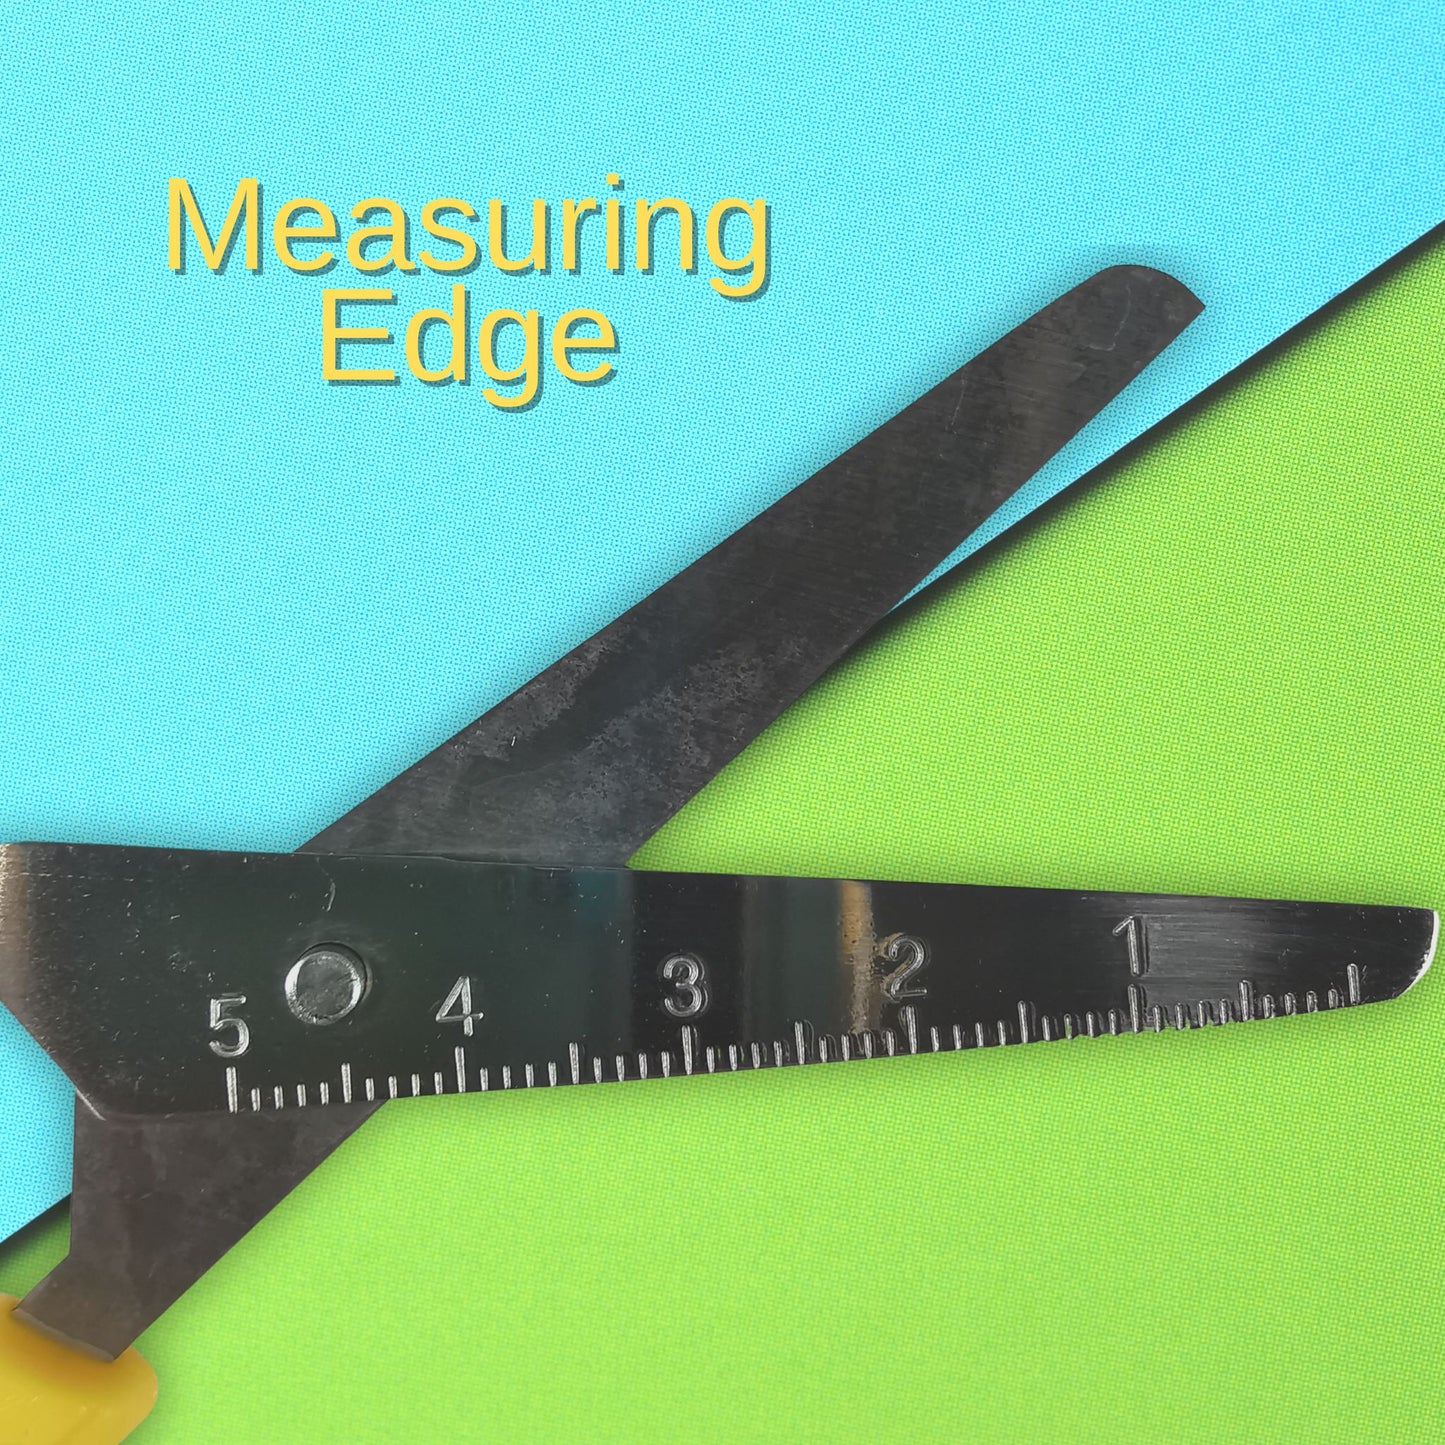 Left Handed Children's Scissors Ruler Edge Rounded Tip Safety Scissors